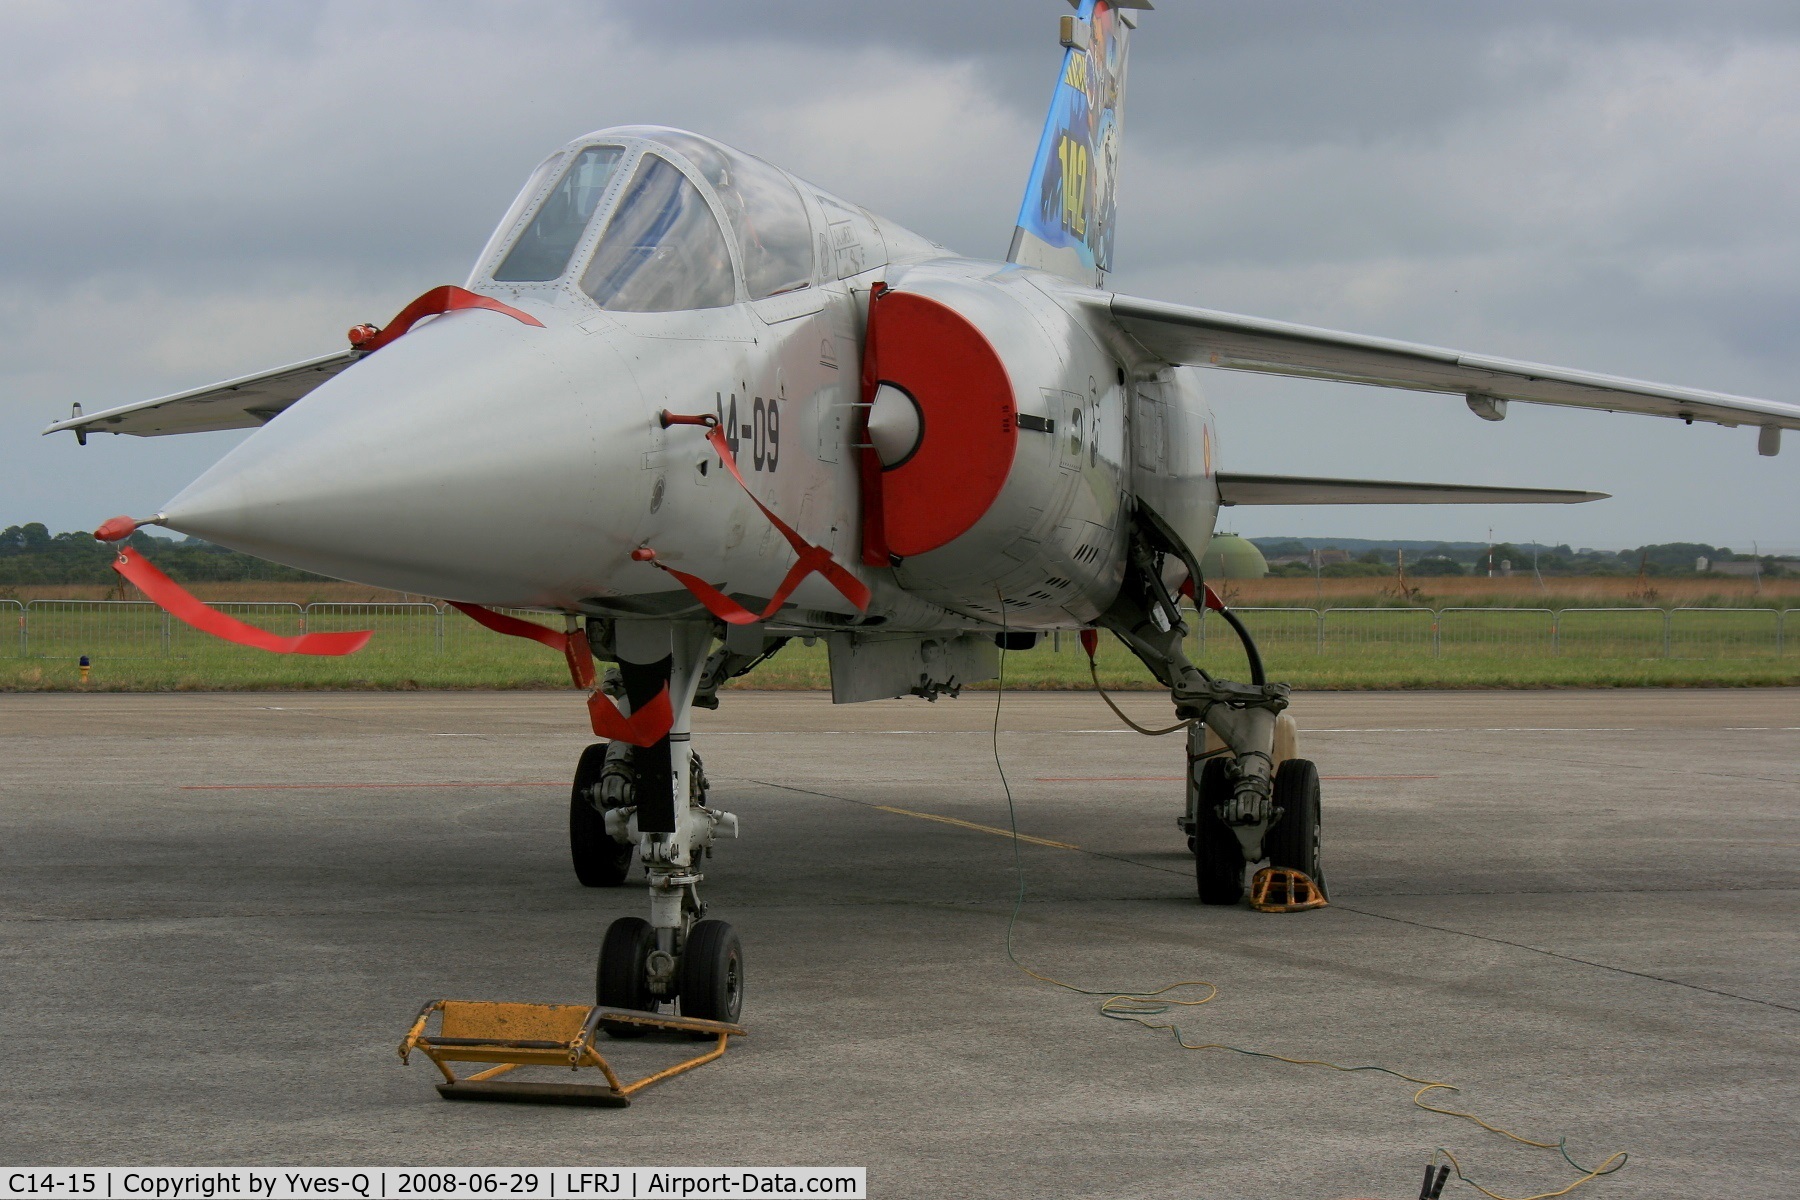 C14-15, Dassault Mirage F-1CE(M) C/N not found, Spanish Air Force Dassault Mirage F1 CE(M), Tiger meet 2008 